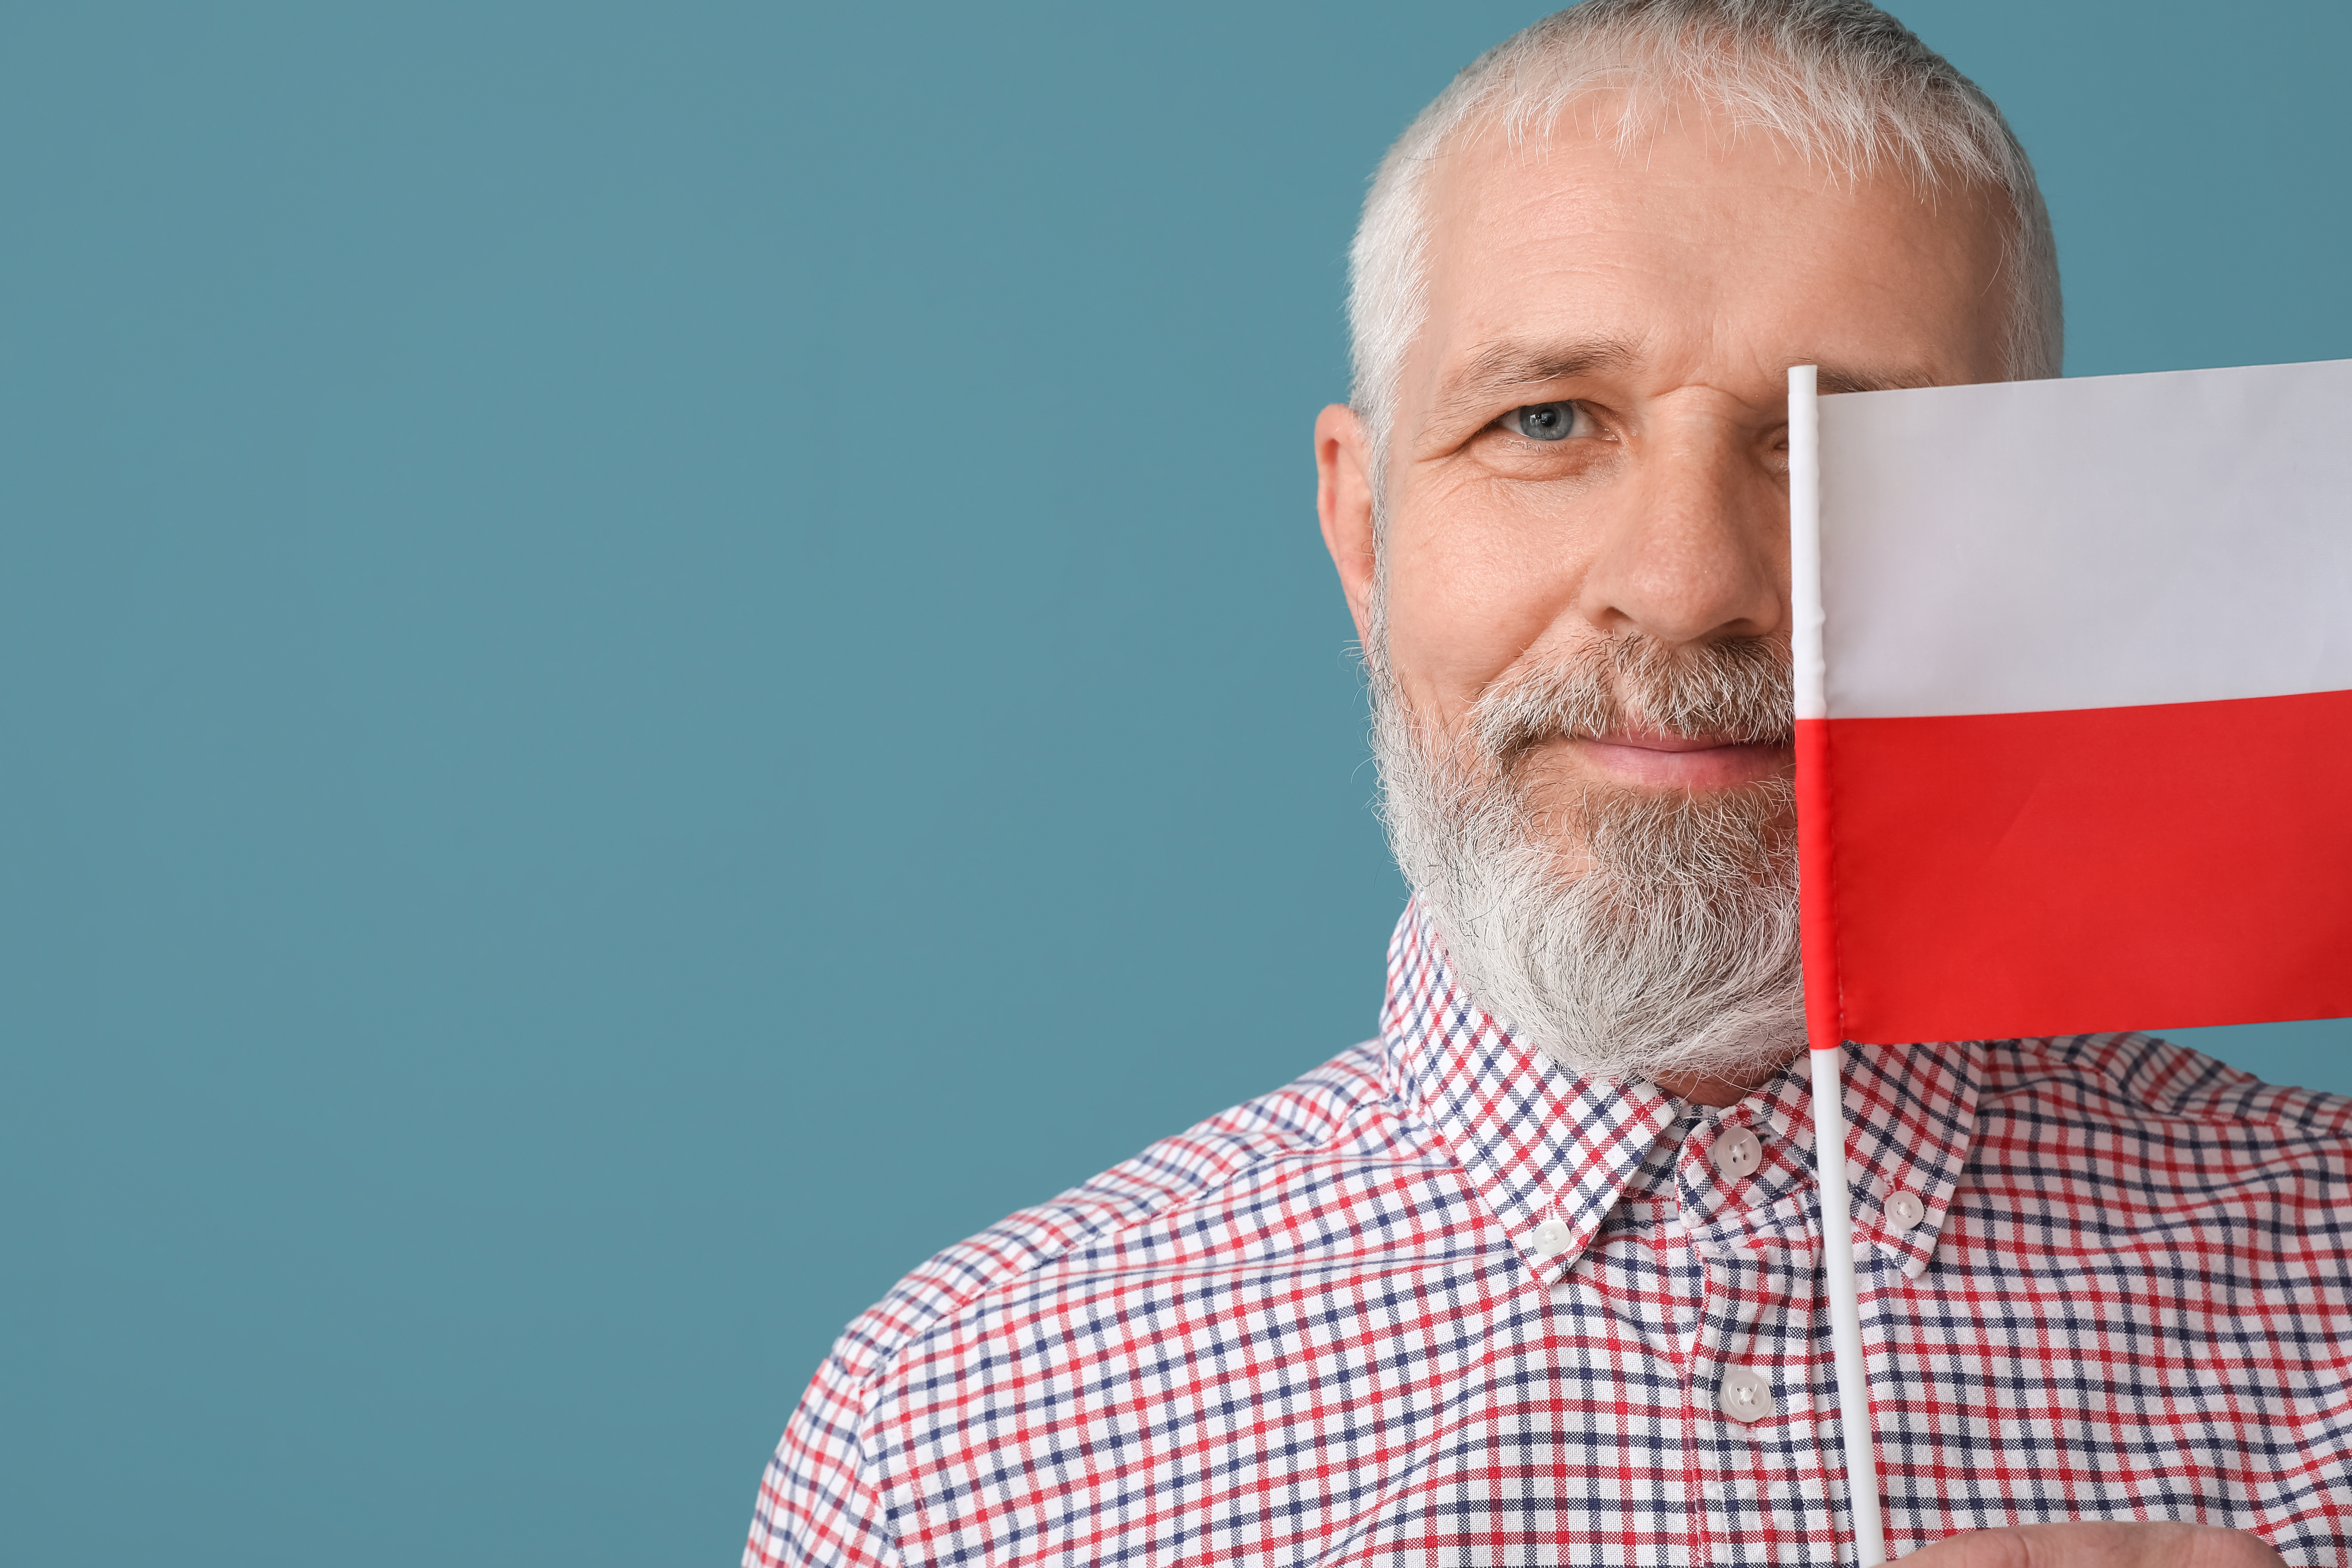 Мужчина с флагом Польши, где он получил карту сталего побыту